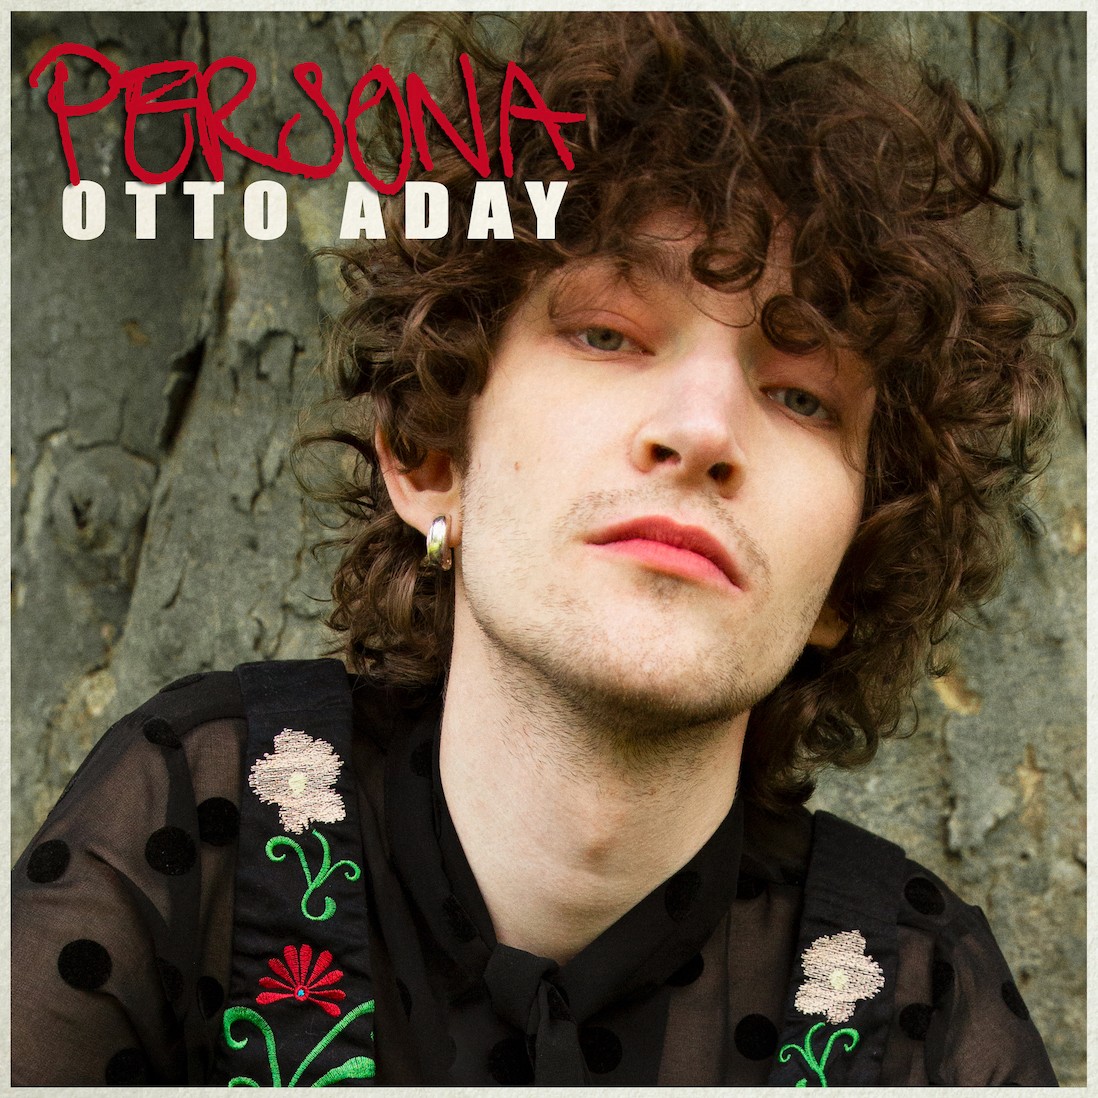 Otto Aday ‘Persona’ album artwork